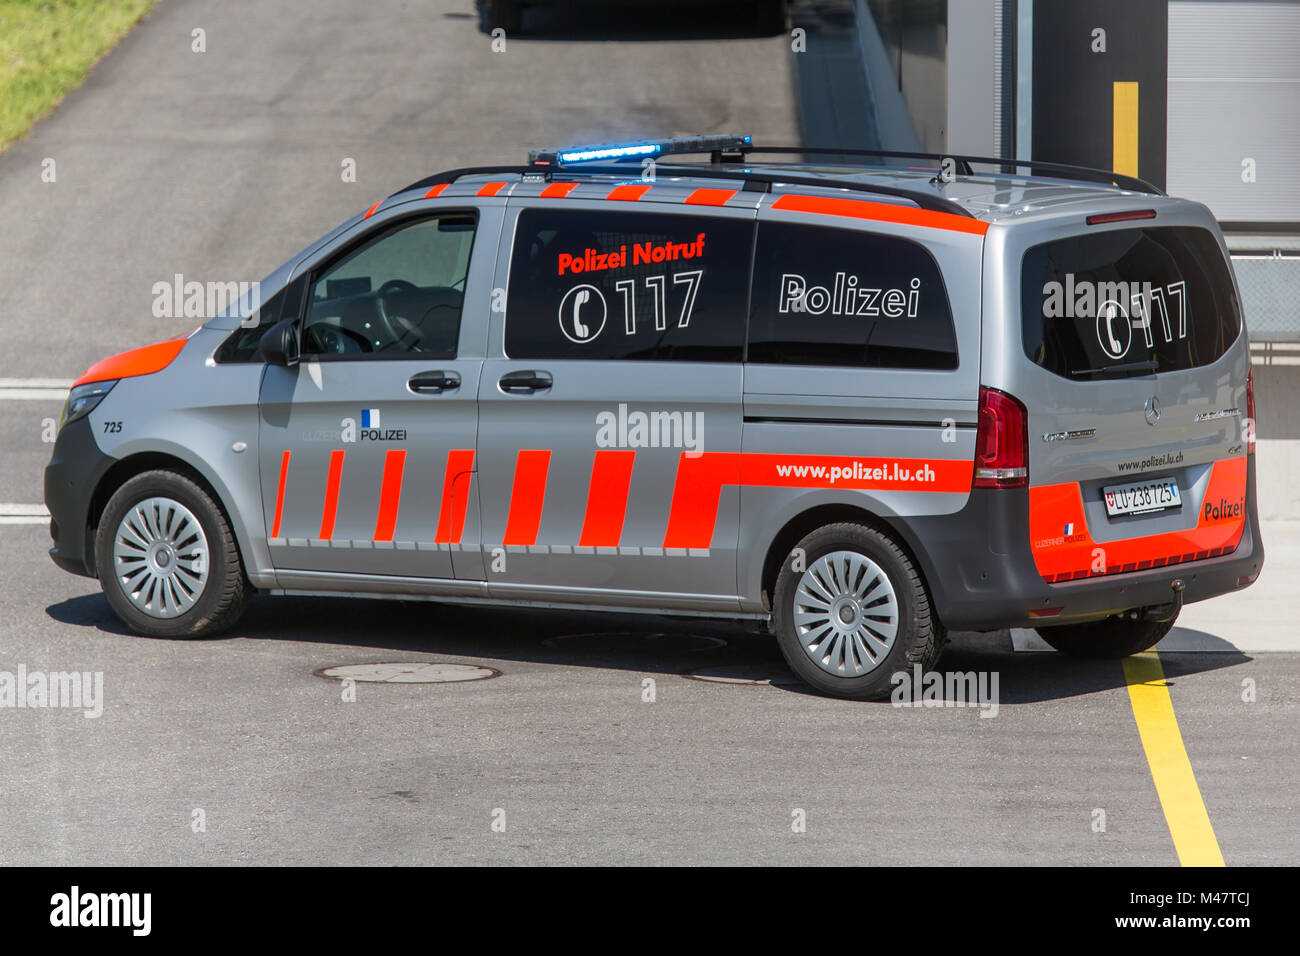 Polizeiauto mit Sondergruppe Luchs von der Luzerner Polizei Stock Photo -  Alamy